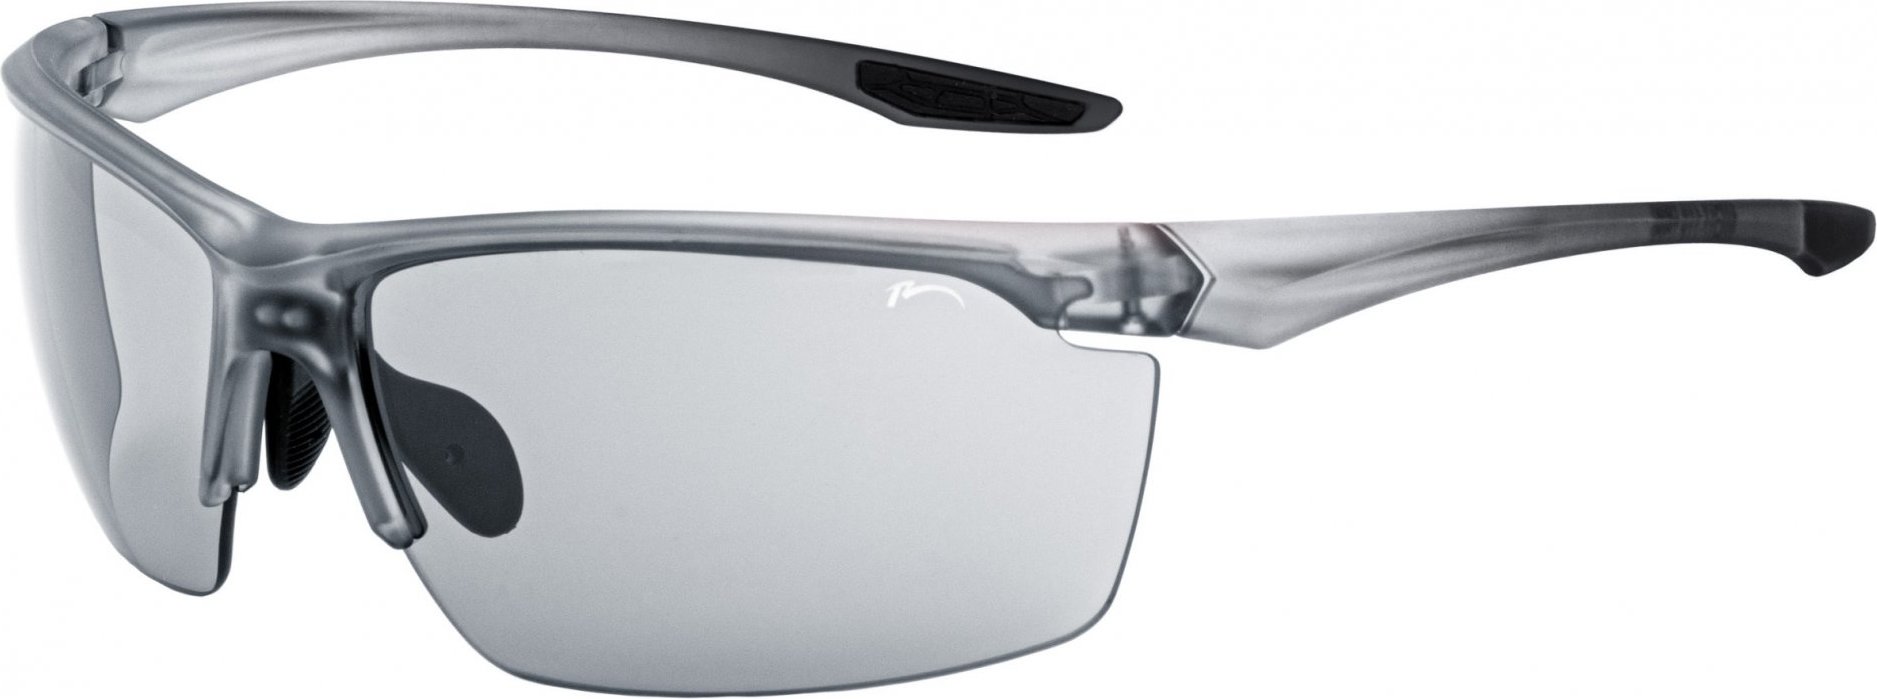 Sportovní sluneční brýle RELAX Victoria šedé